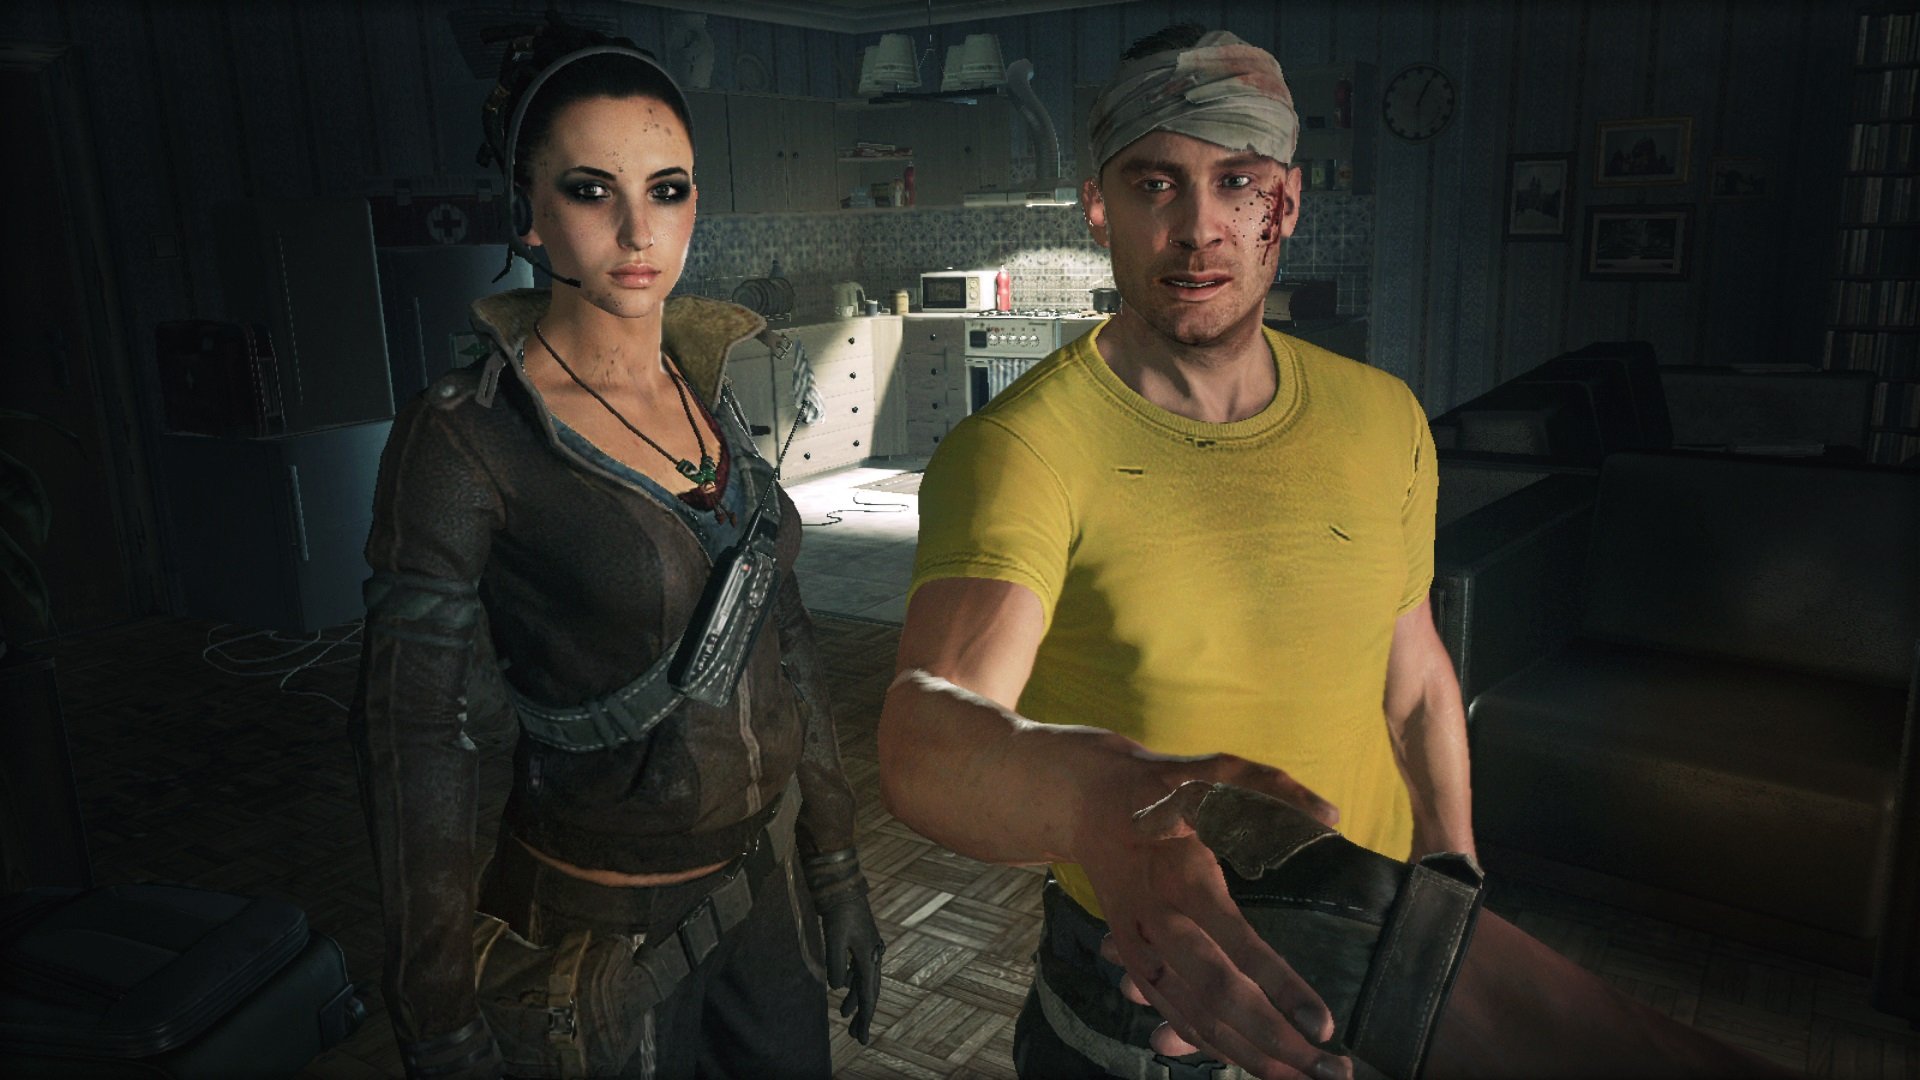 Dead Island, Dying Light: veja os melhores jogos de Zumbis para Xbox One